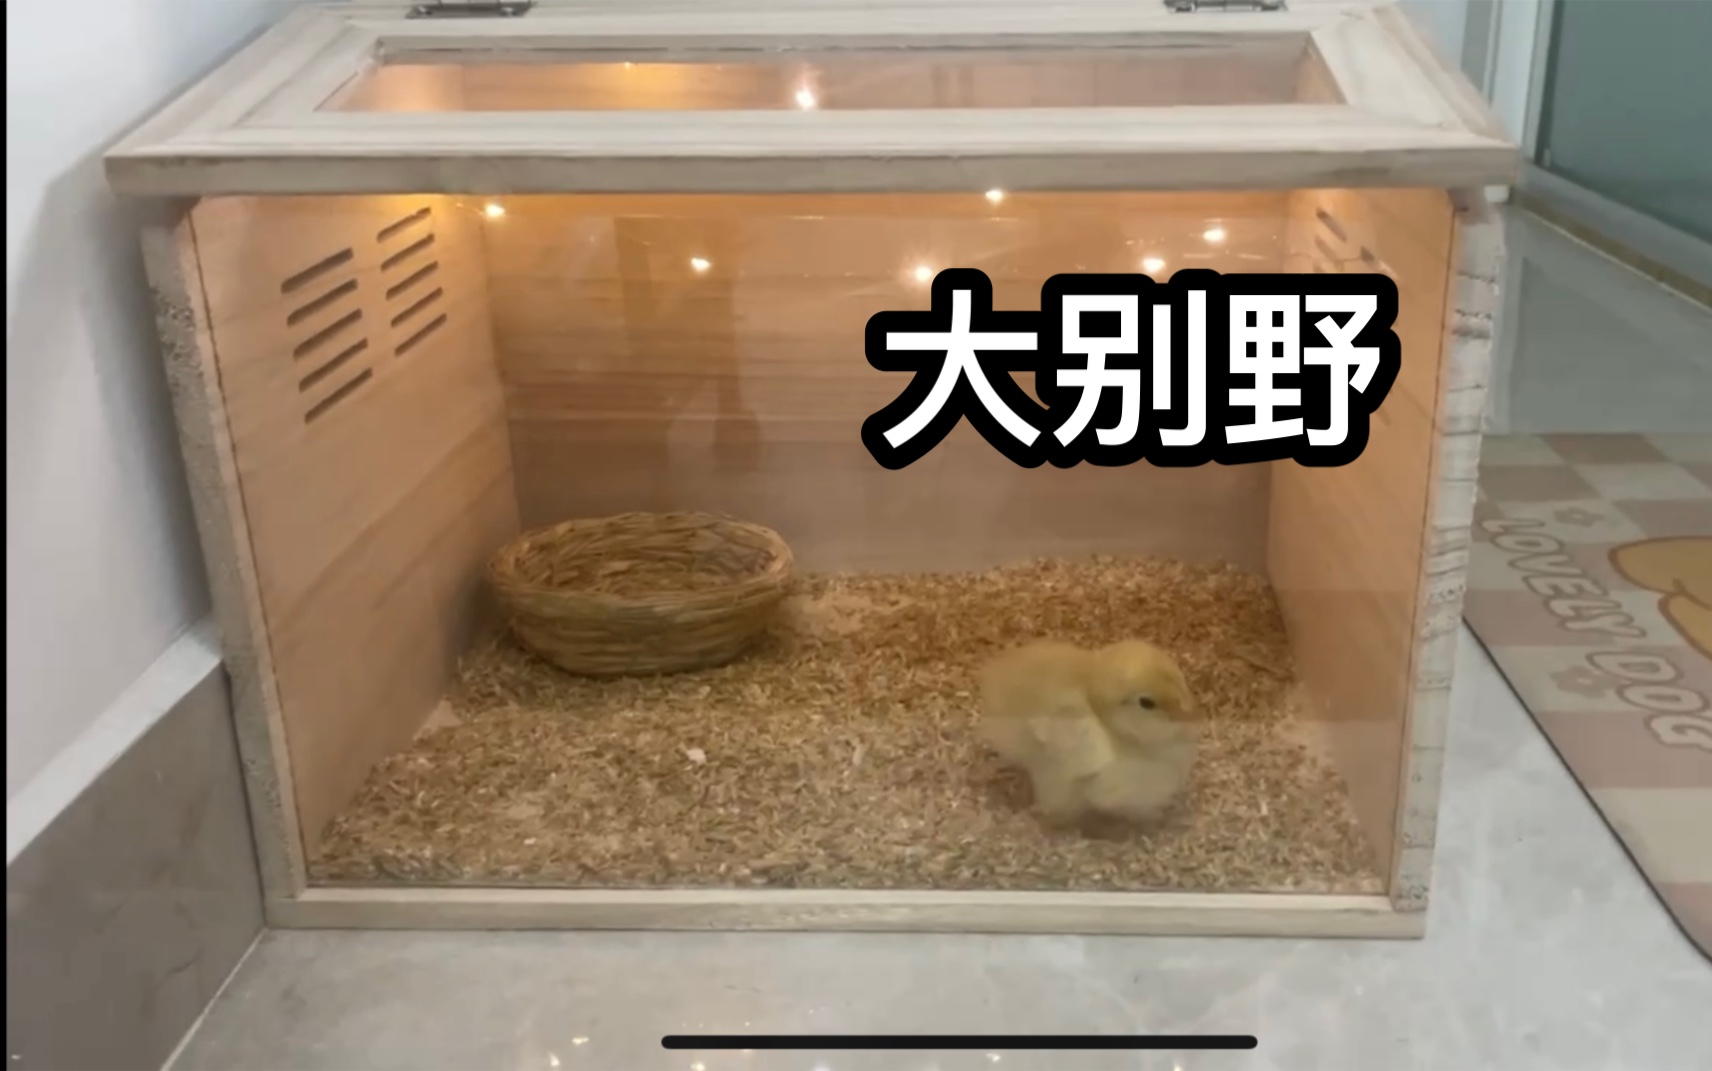 台风天，捡到小鸡第五天：今天公布小鸡名字，还给小鸡装了新窝。